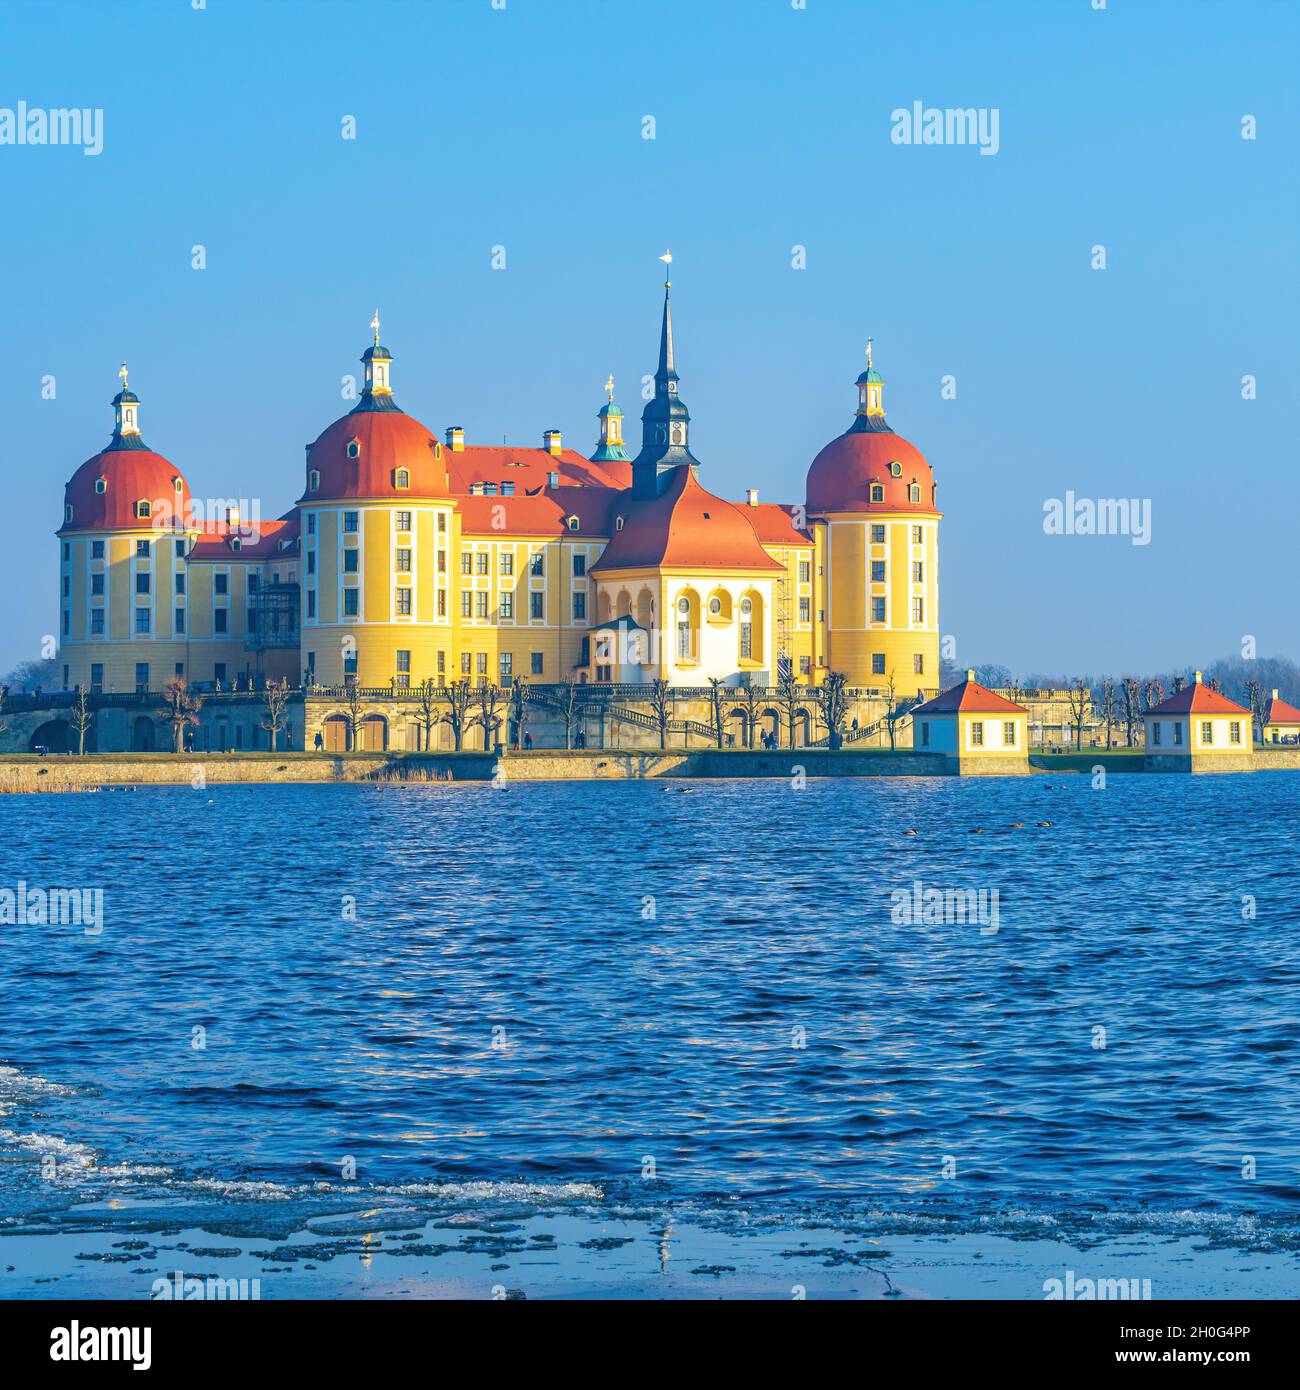 Moritzburg bei Dresden, Sachsen, Deutschland: Außenansicht des Schlosses Moritzburg im Winter mit halbgefrorenem Schlossteich, von Nordwesten. Stockfoto